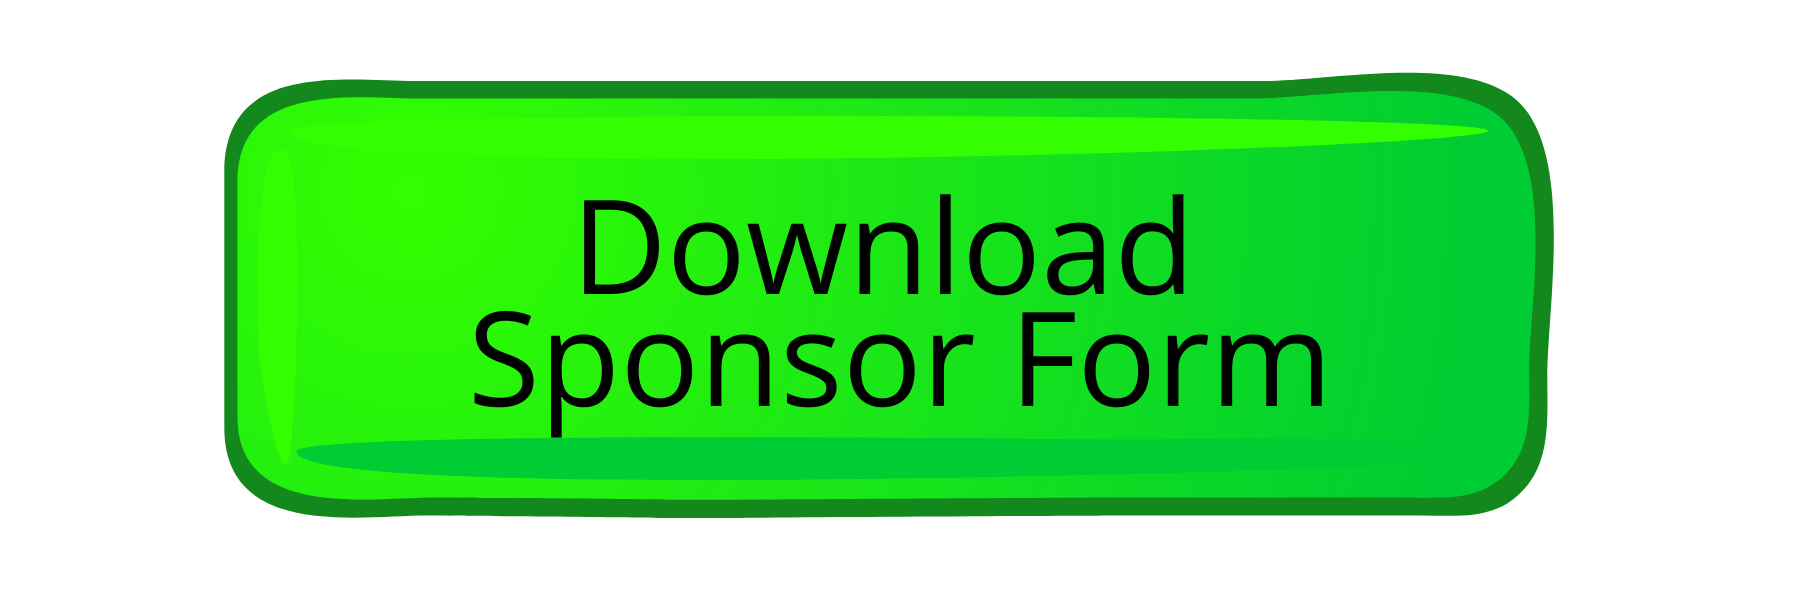 Download Sponsor Form